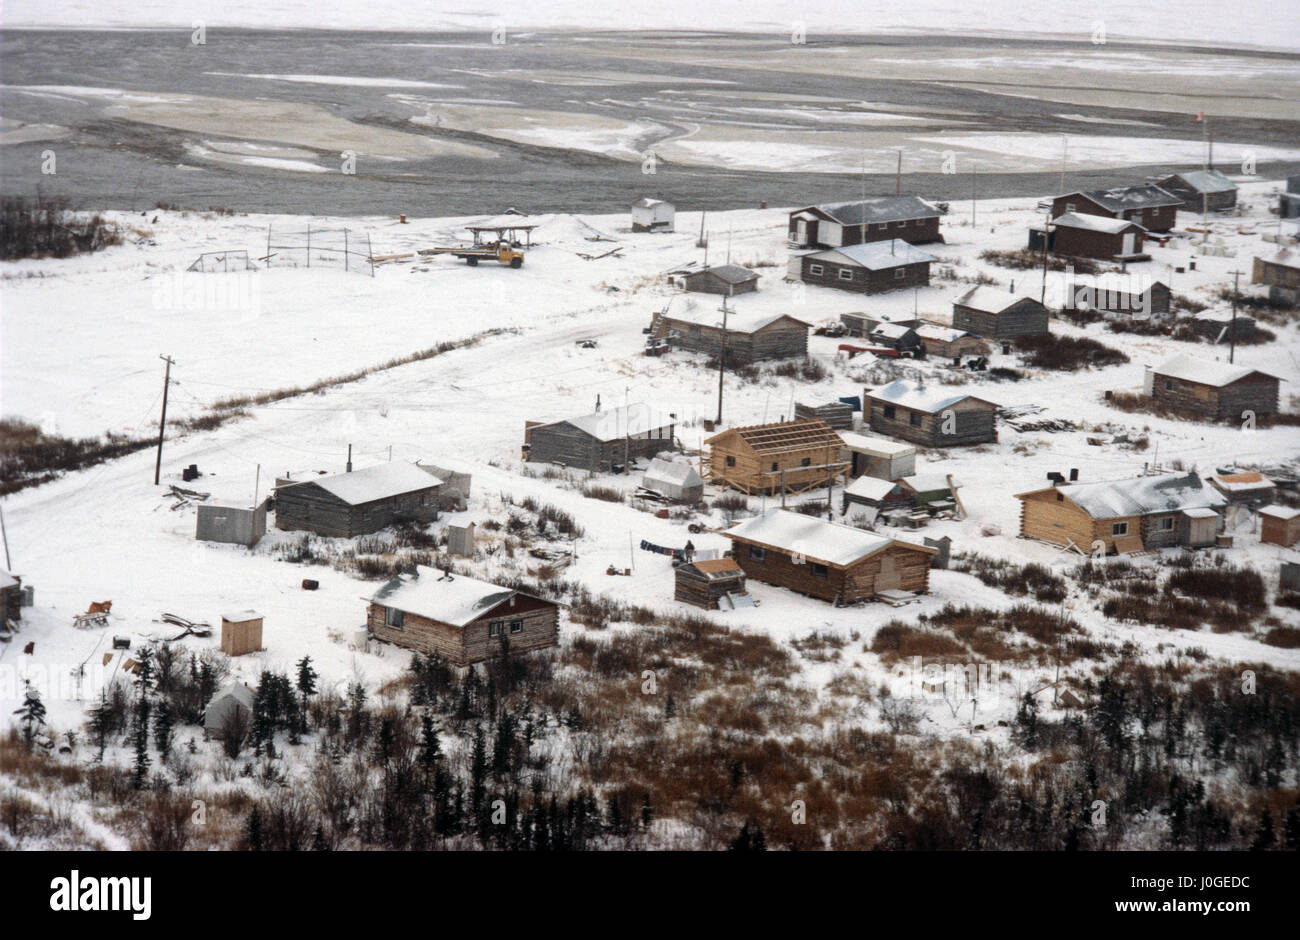 Alte Krähe Gemeinde im nördlichen Teil des kanadischen Territoriums Yukon, gehören die meisten Einwohner der Gwichʼin sprechende Aborigines Vuntut Gwitchin First Nation. Stockfoto